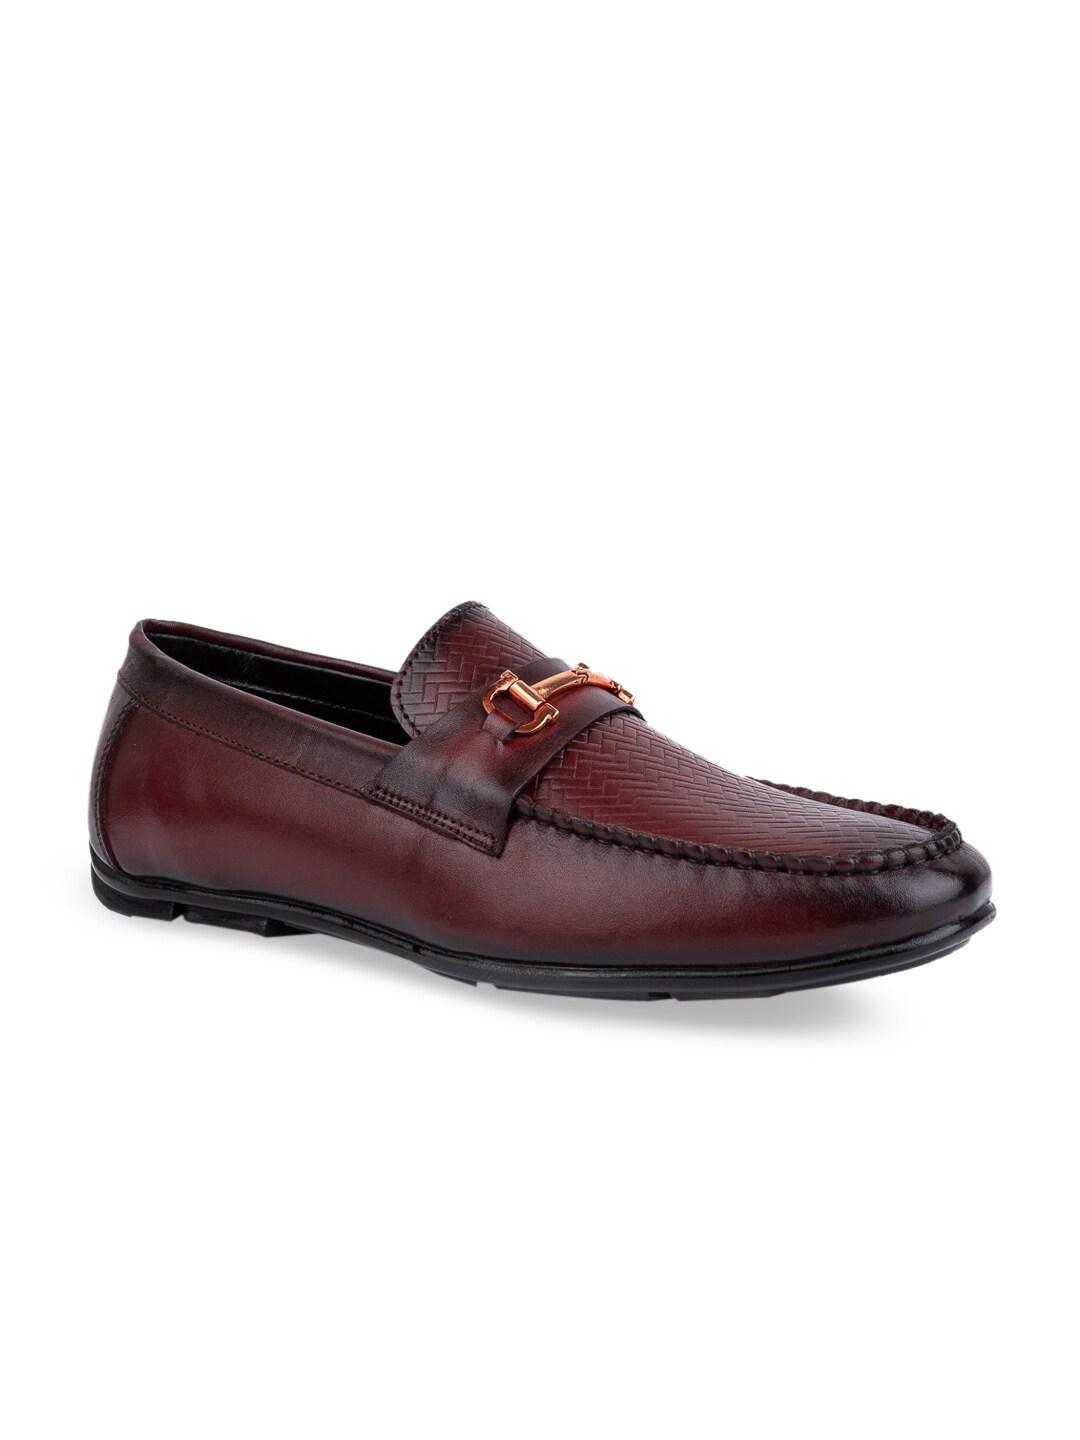 LA BOTTE Men Burgundy Textured Leather Formal Loafers